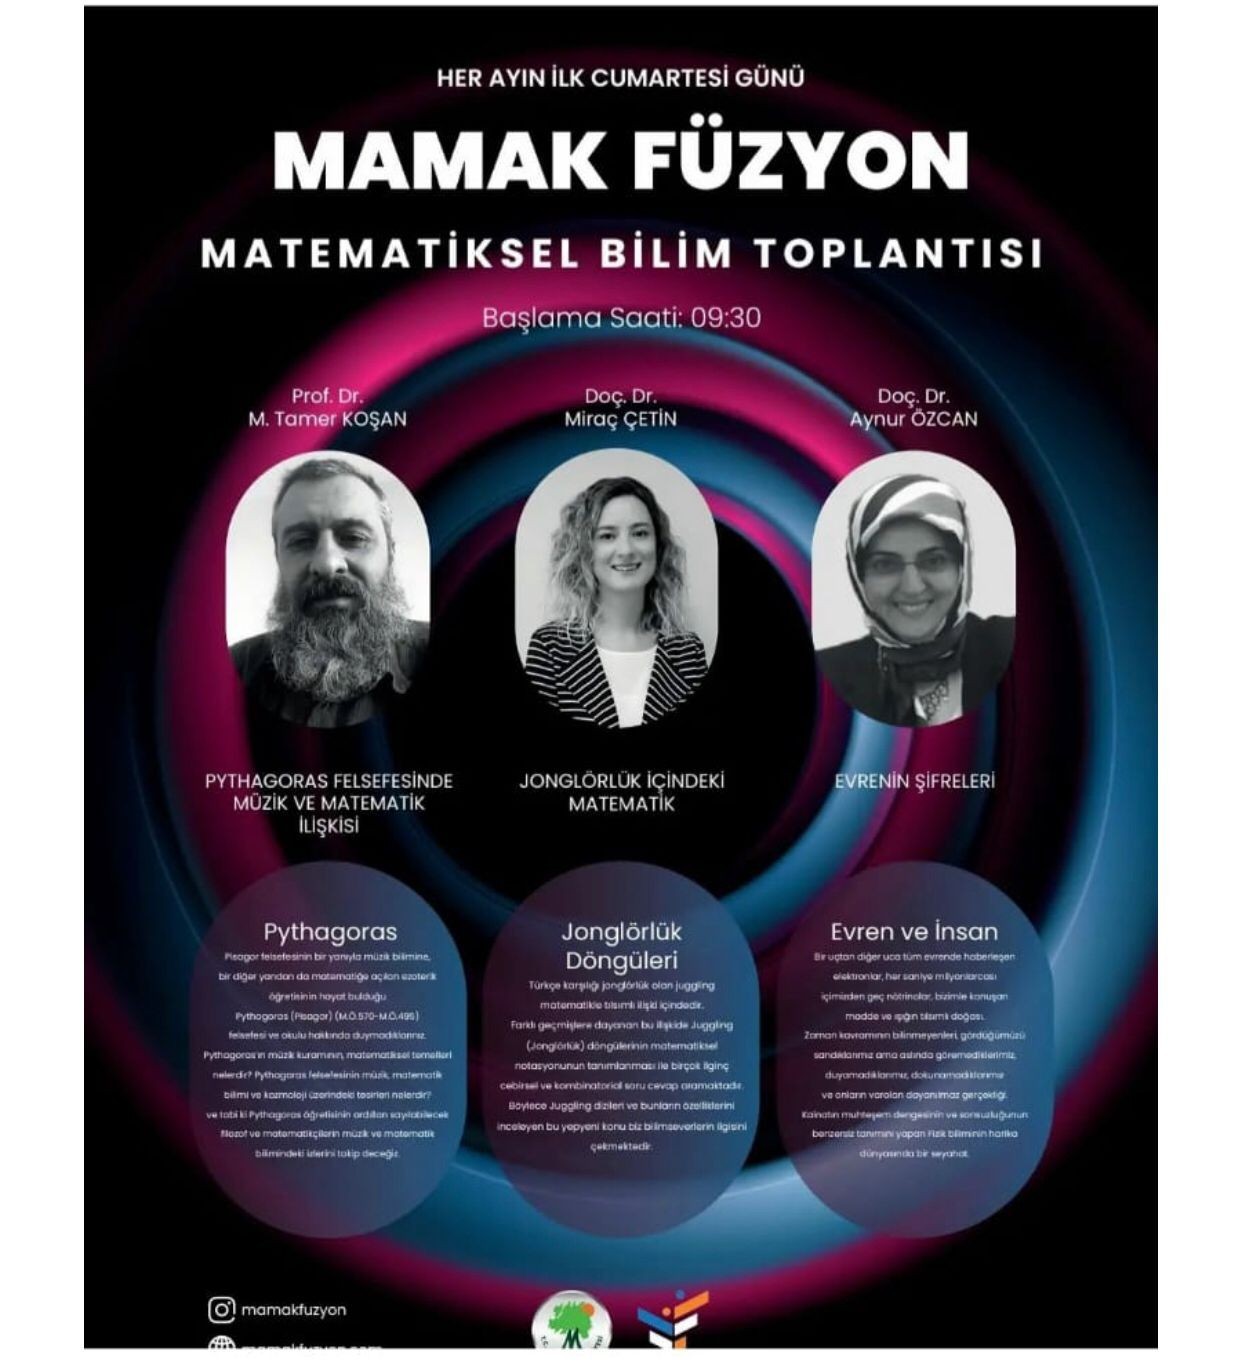 Mamak’ta “Matematiksel Bilim Toplantıları” düzenlenecek #ankara